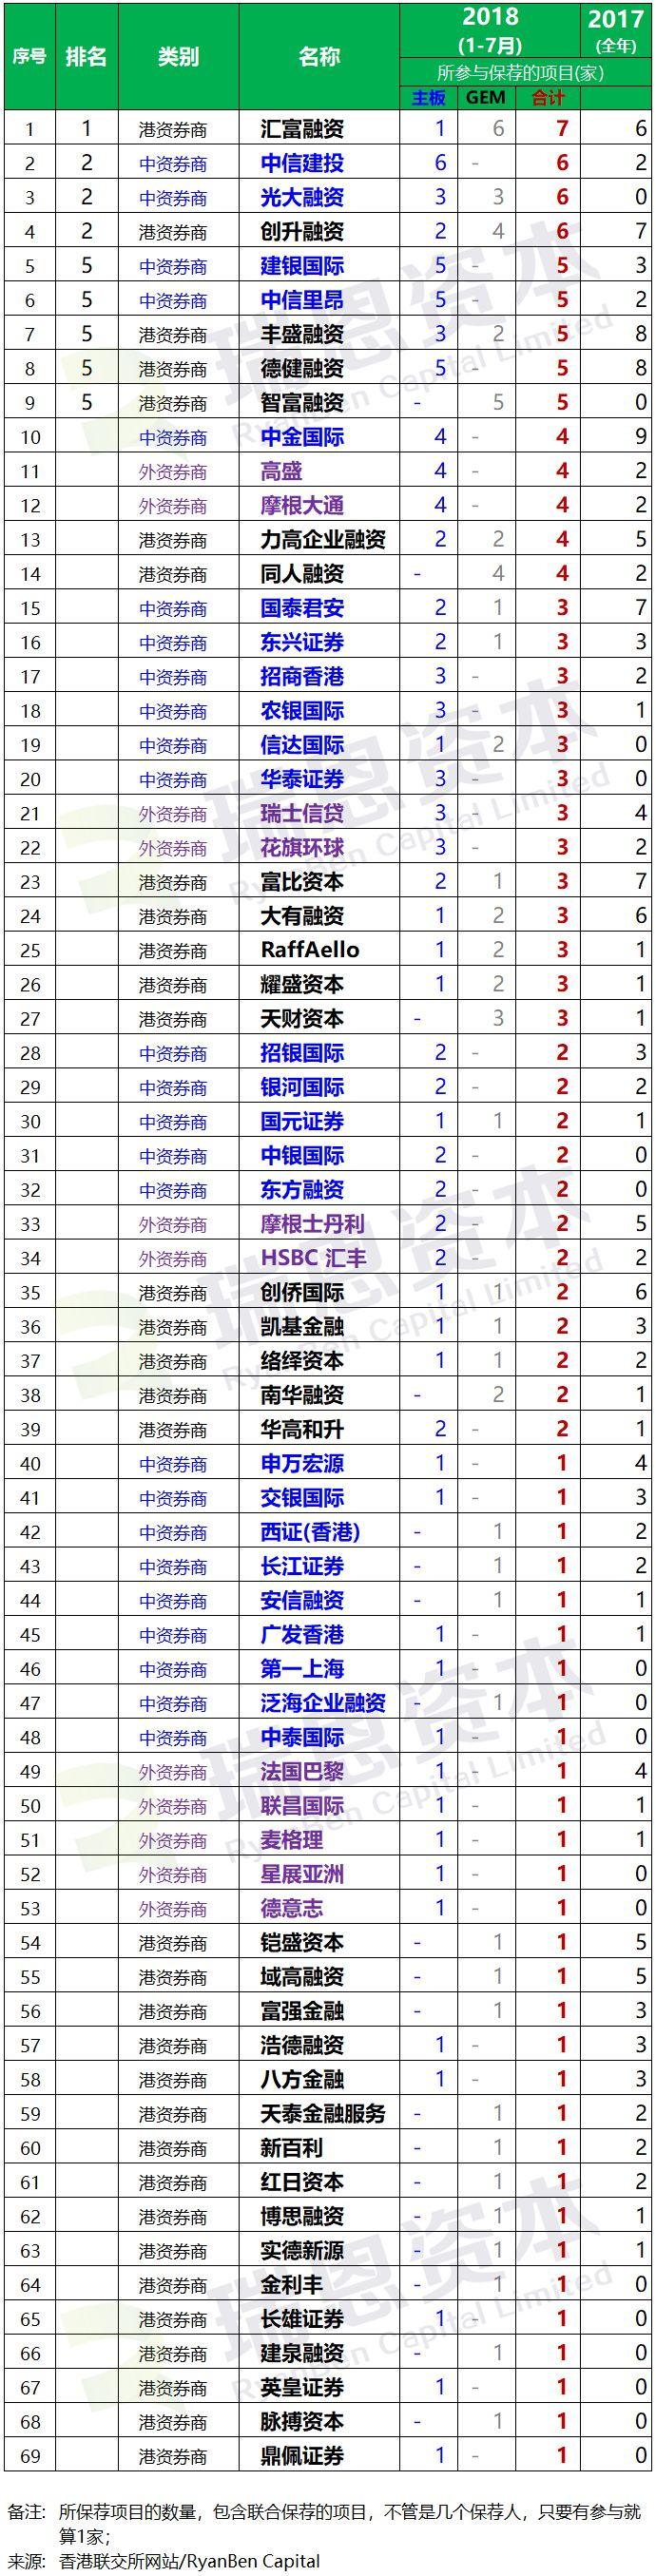 香港IPO上市中介团队.券商保荐人排行榜 (2018年1-7月)